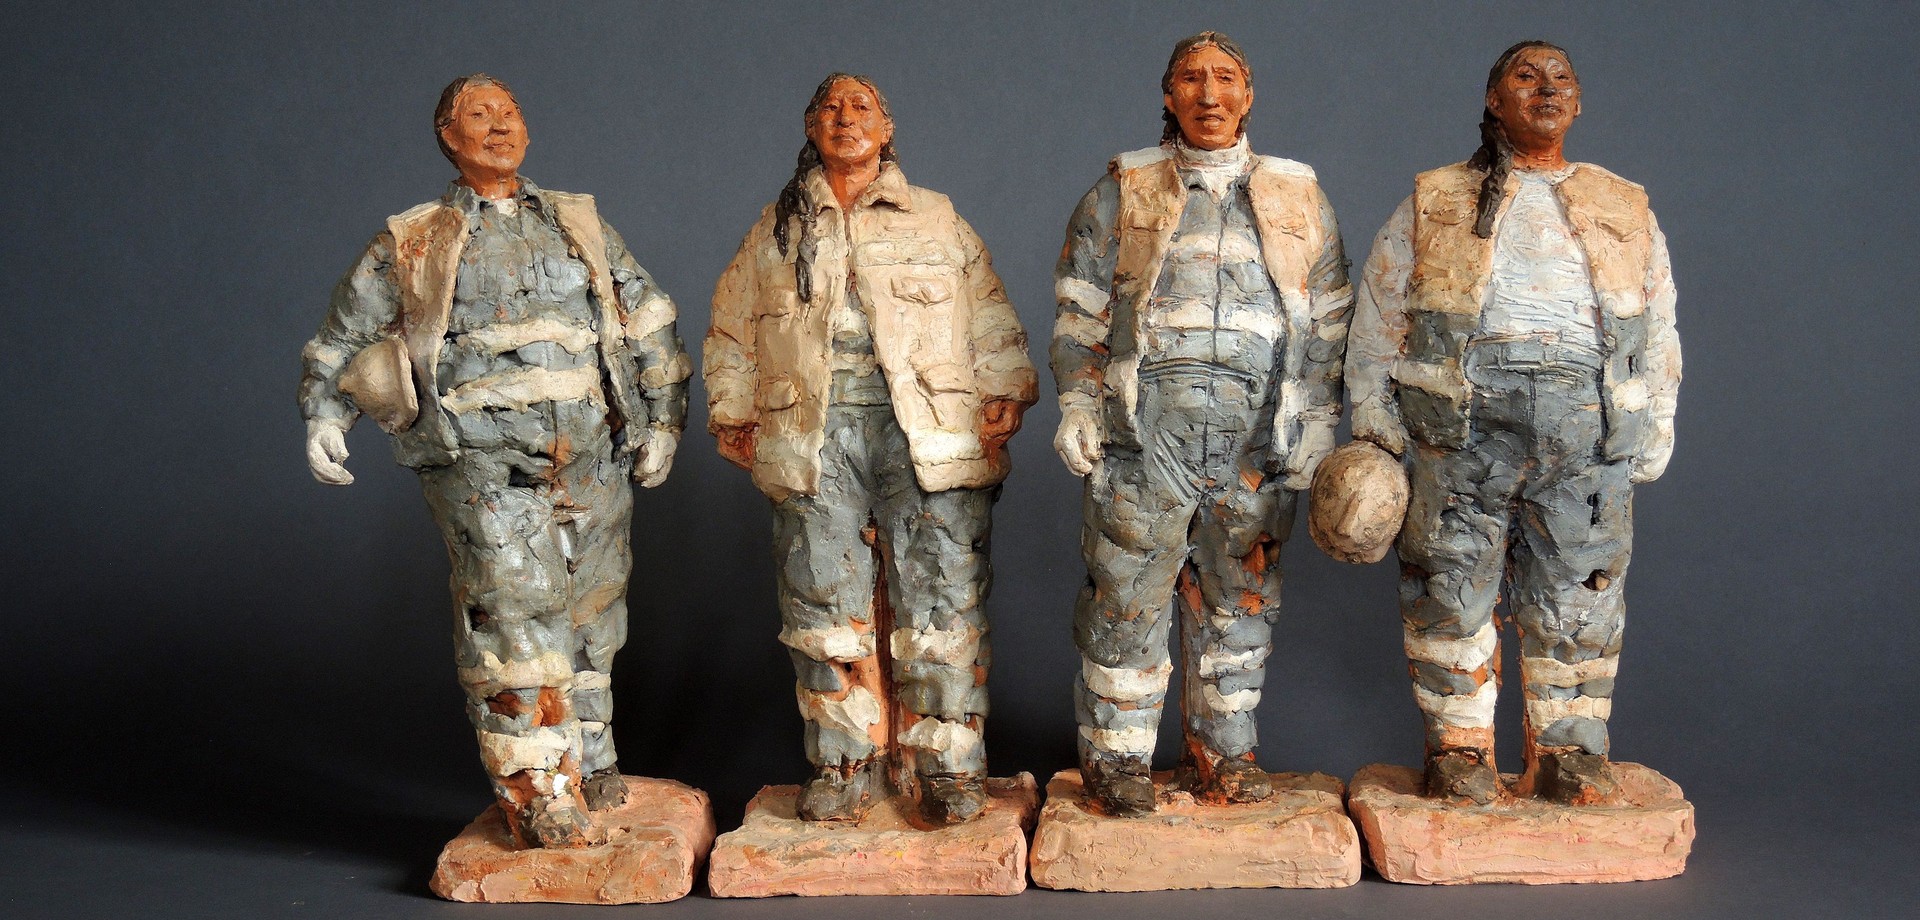 Skulpturen von 4 Bauarbeiterinnen in Arbeitskleidung.